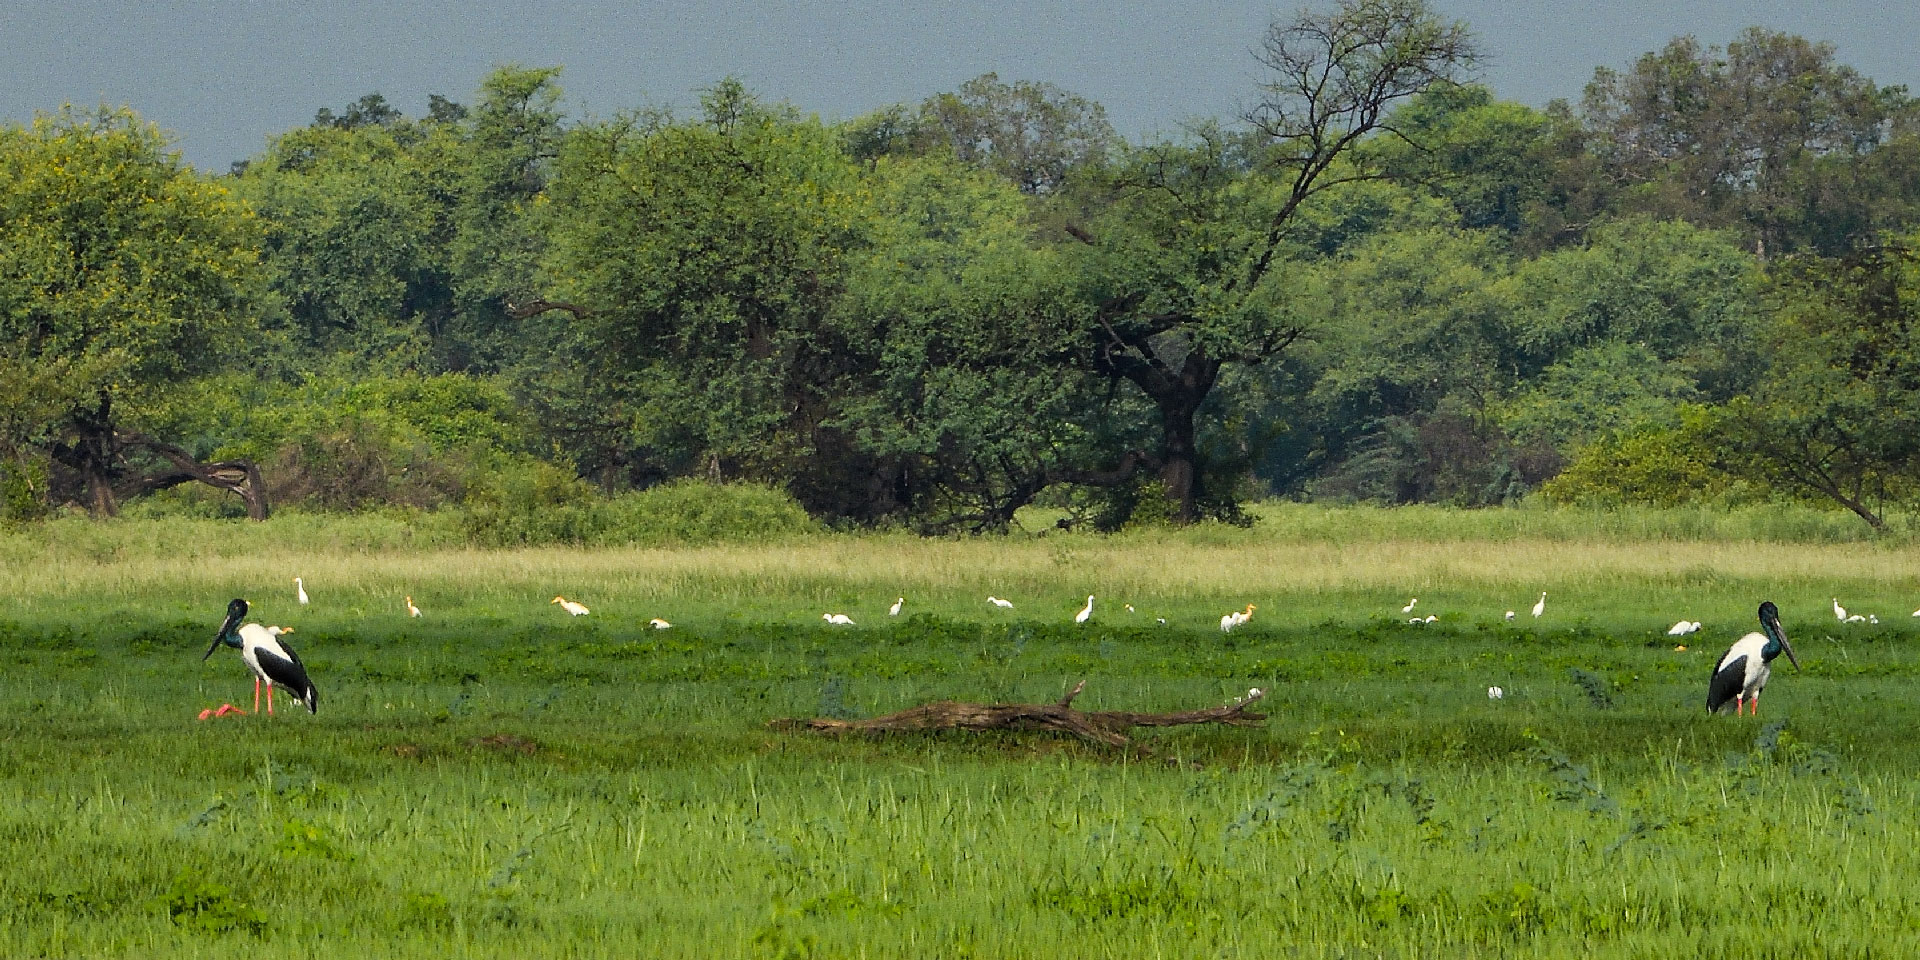 keoladeo-national-park-keoladeo-bharatpur-bird-sanctuary-marshes-black-necked-stork-travelwith